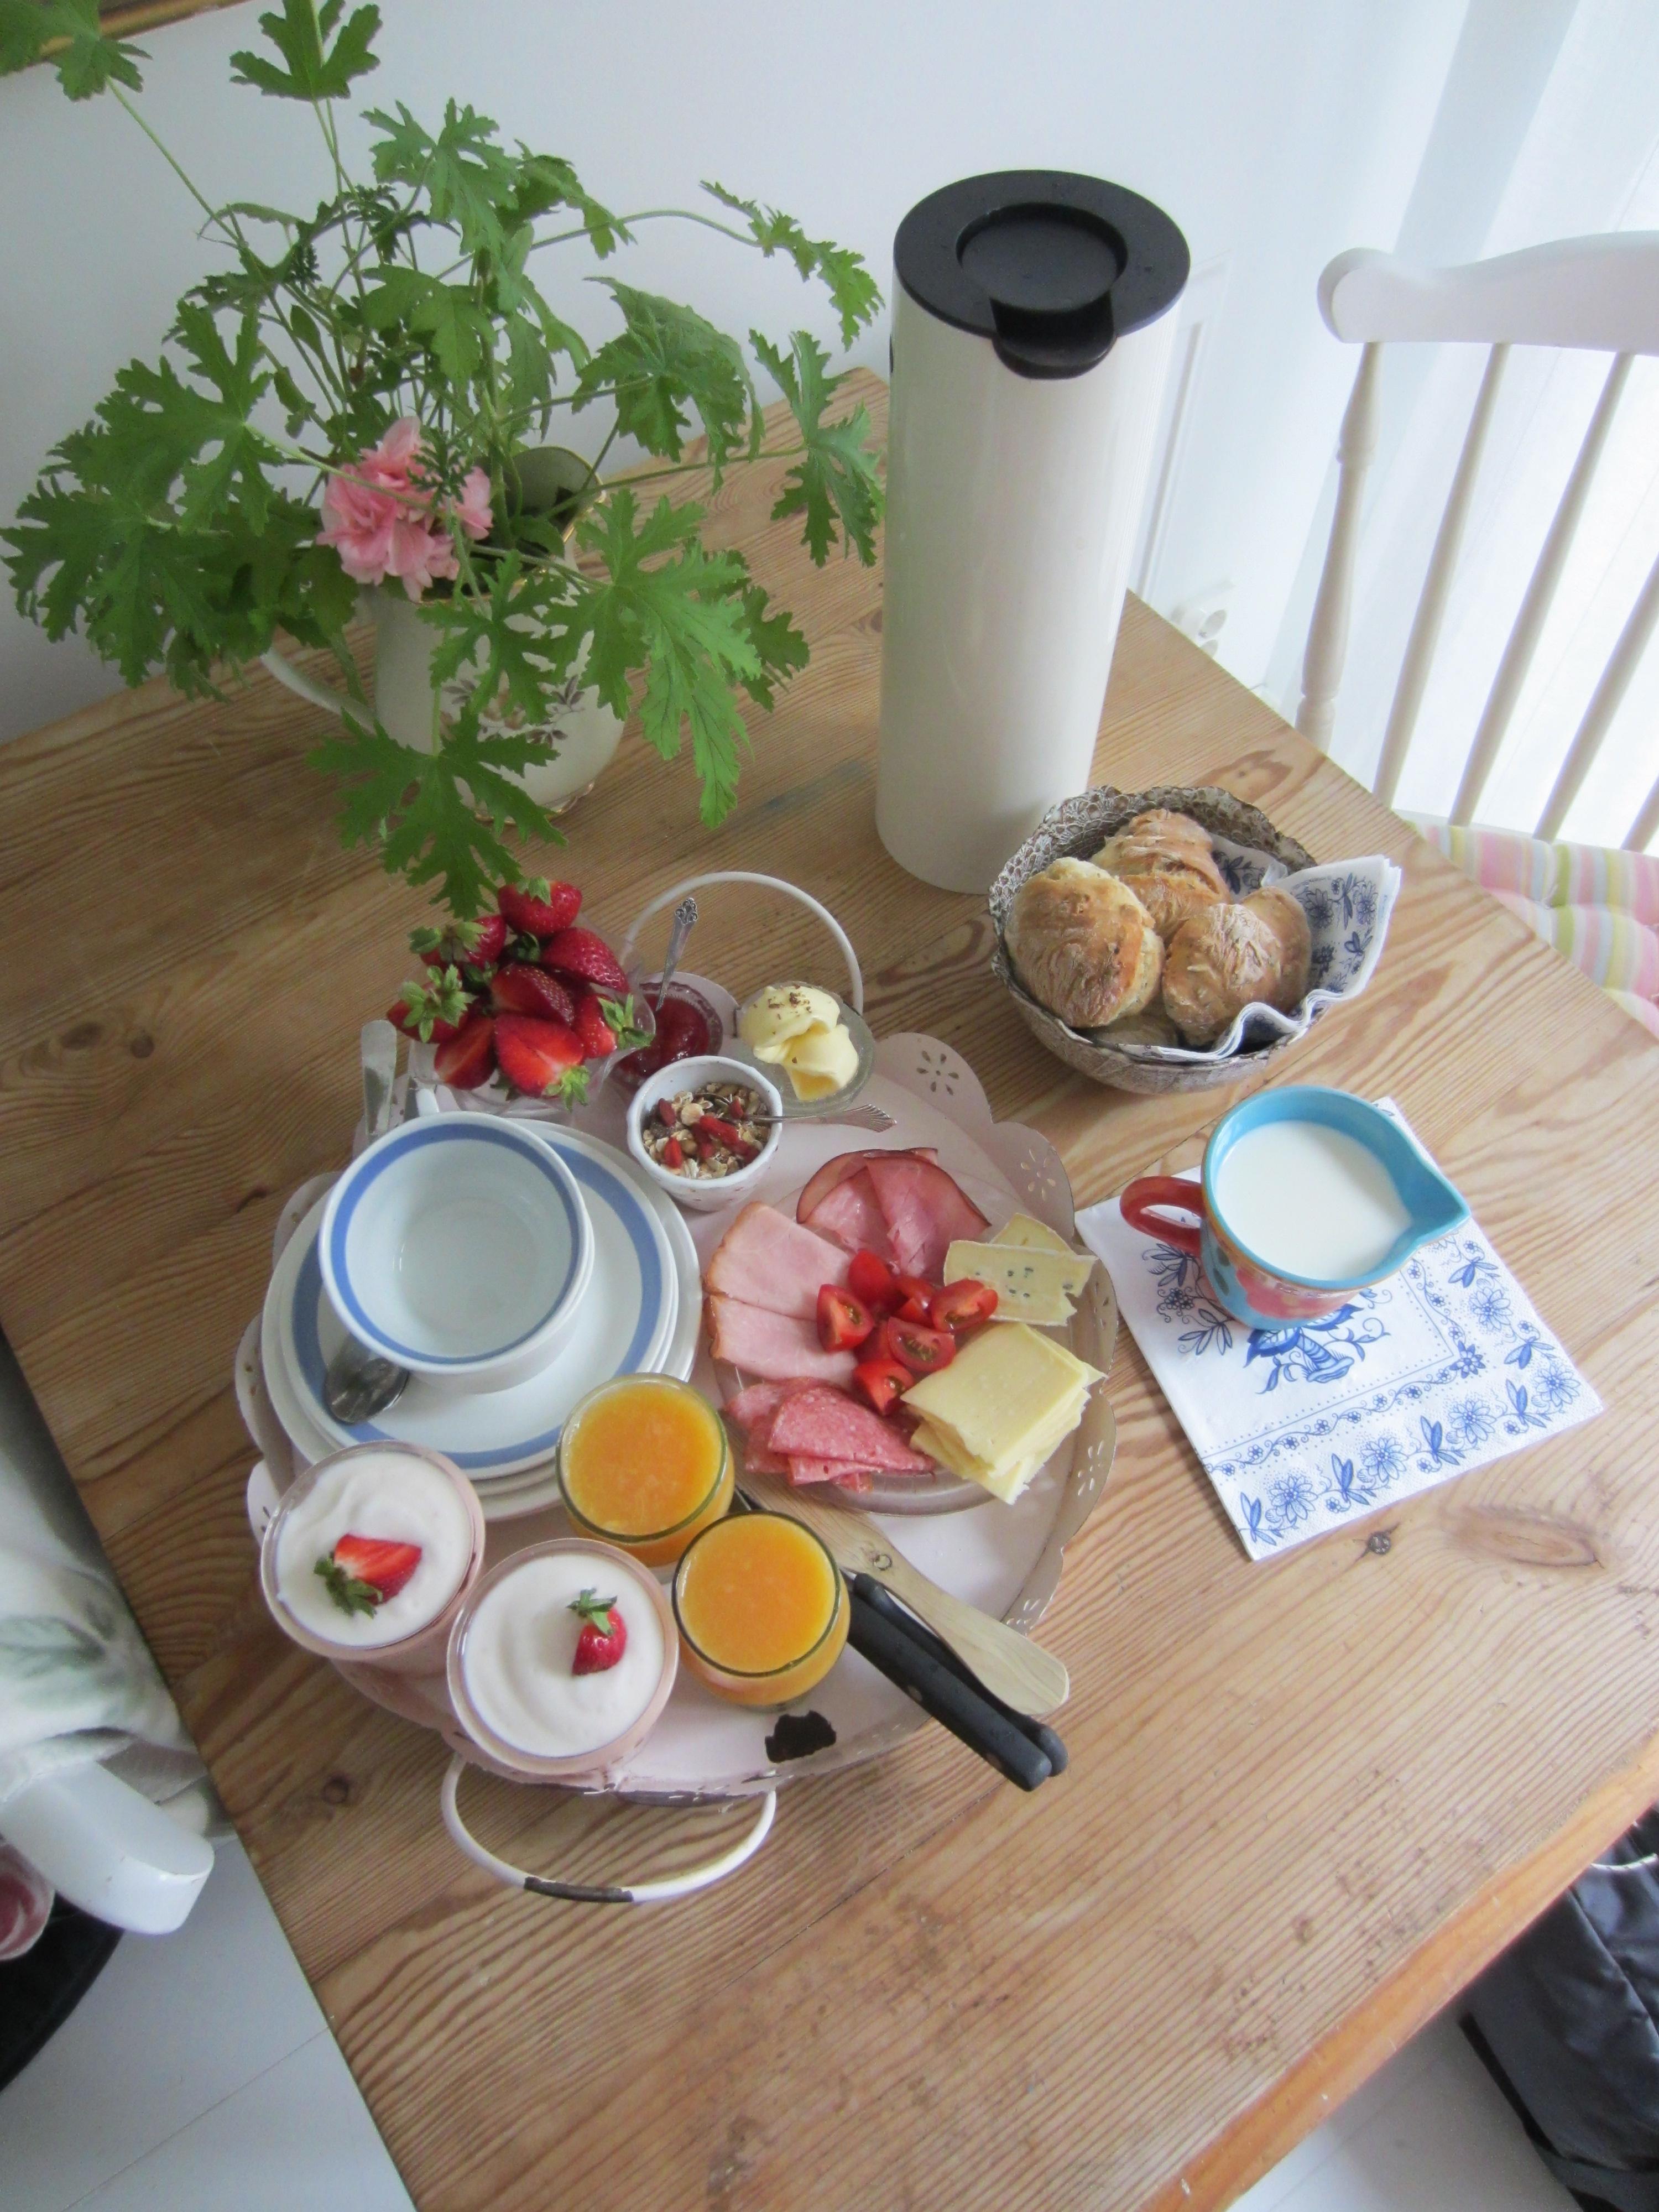 Ausgiebiges Frühstück am Sonntag = unbezahlbar #küche #esstisch #frühstück #stelton #tisch #foodlover